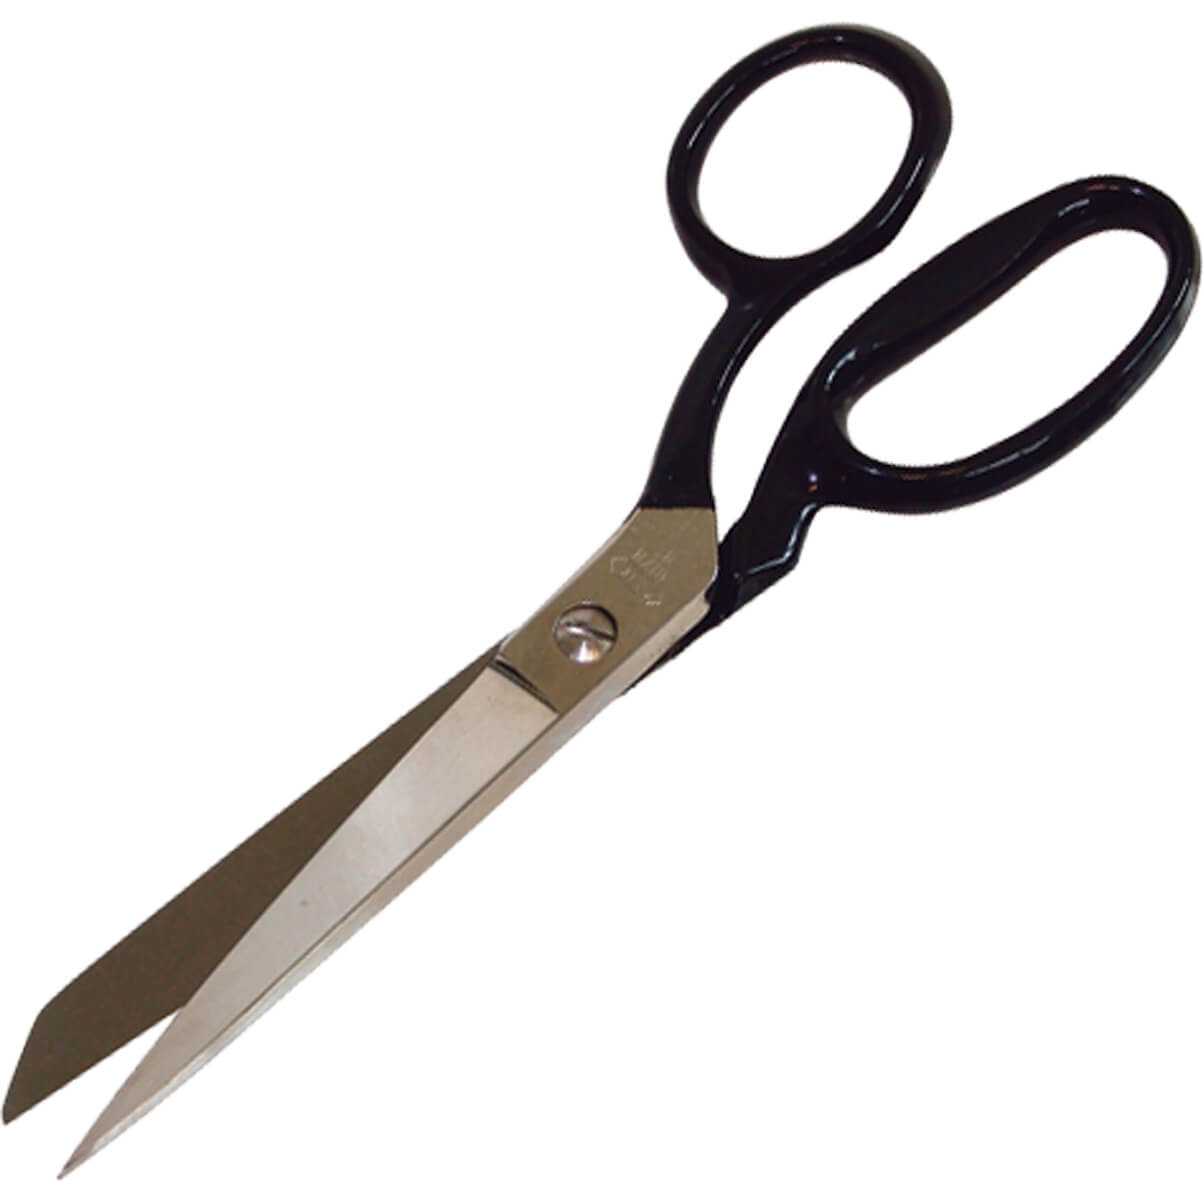 Image of CK Trimming Scissors 8" / 200mm